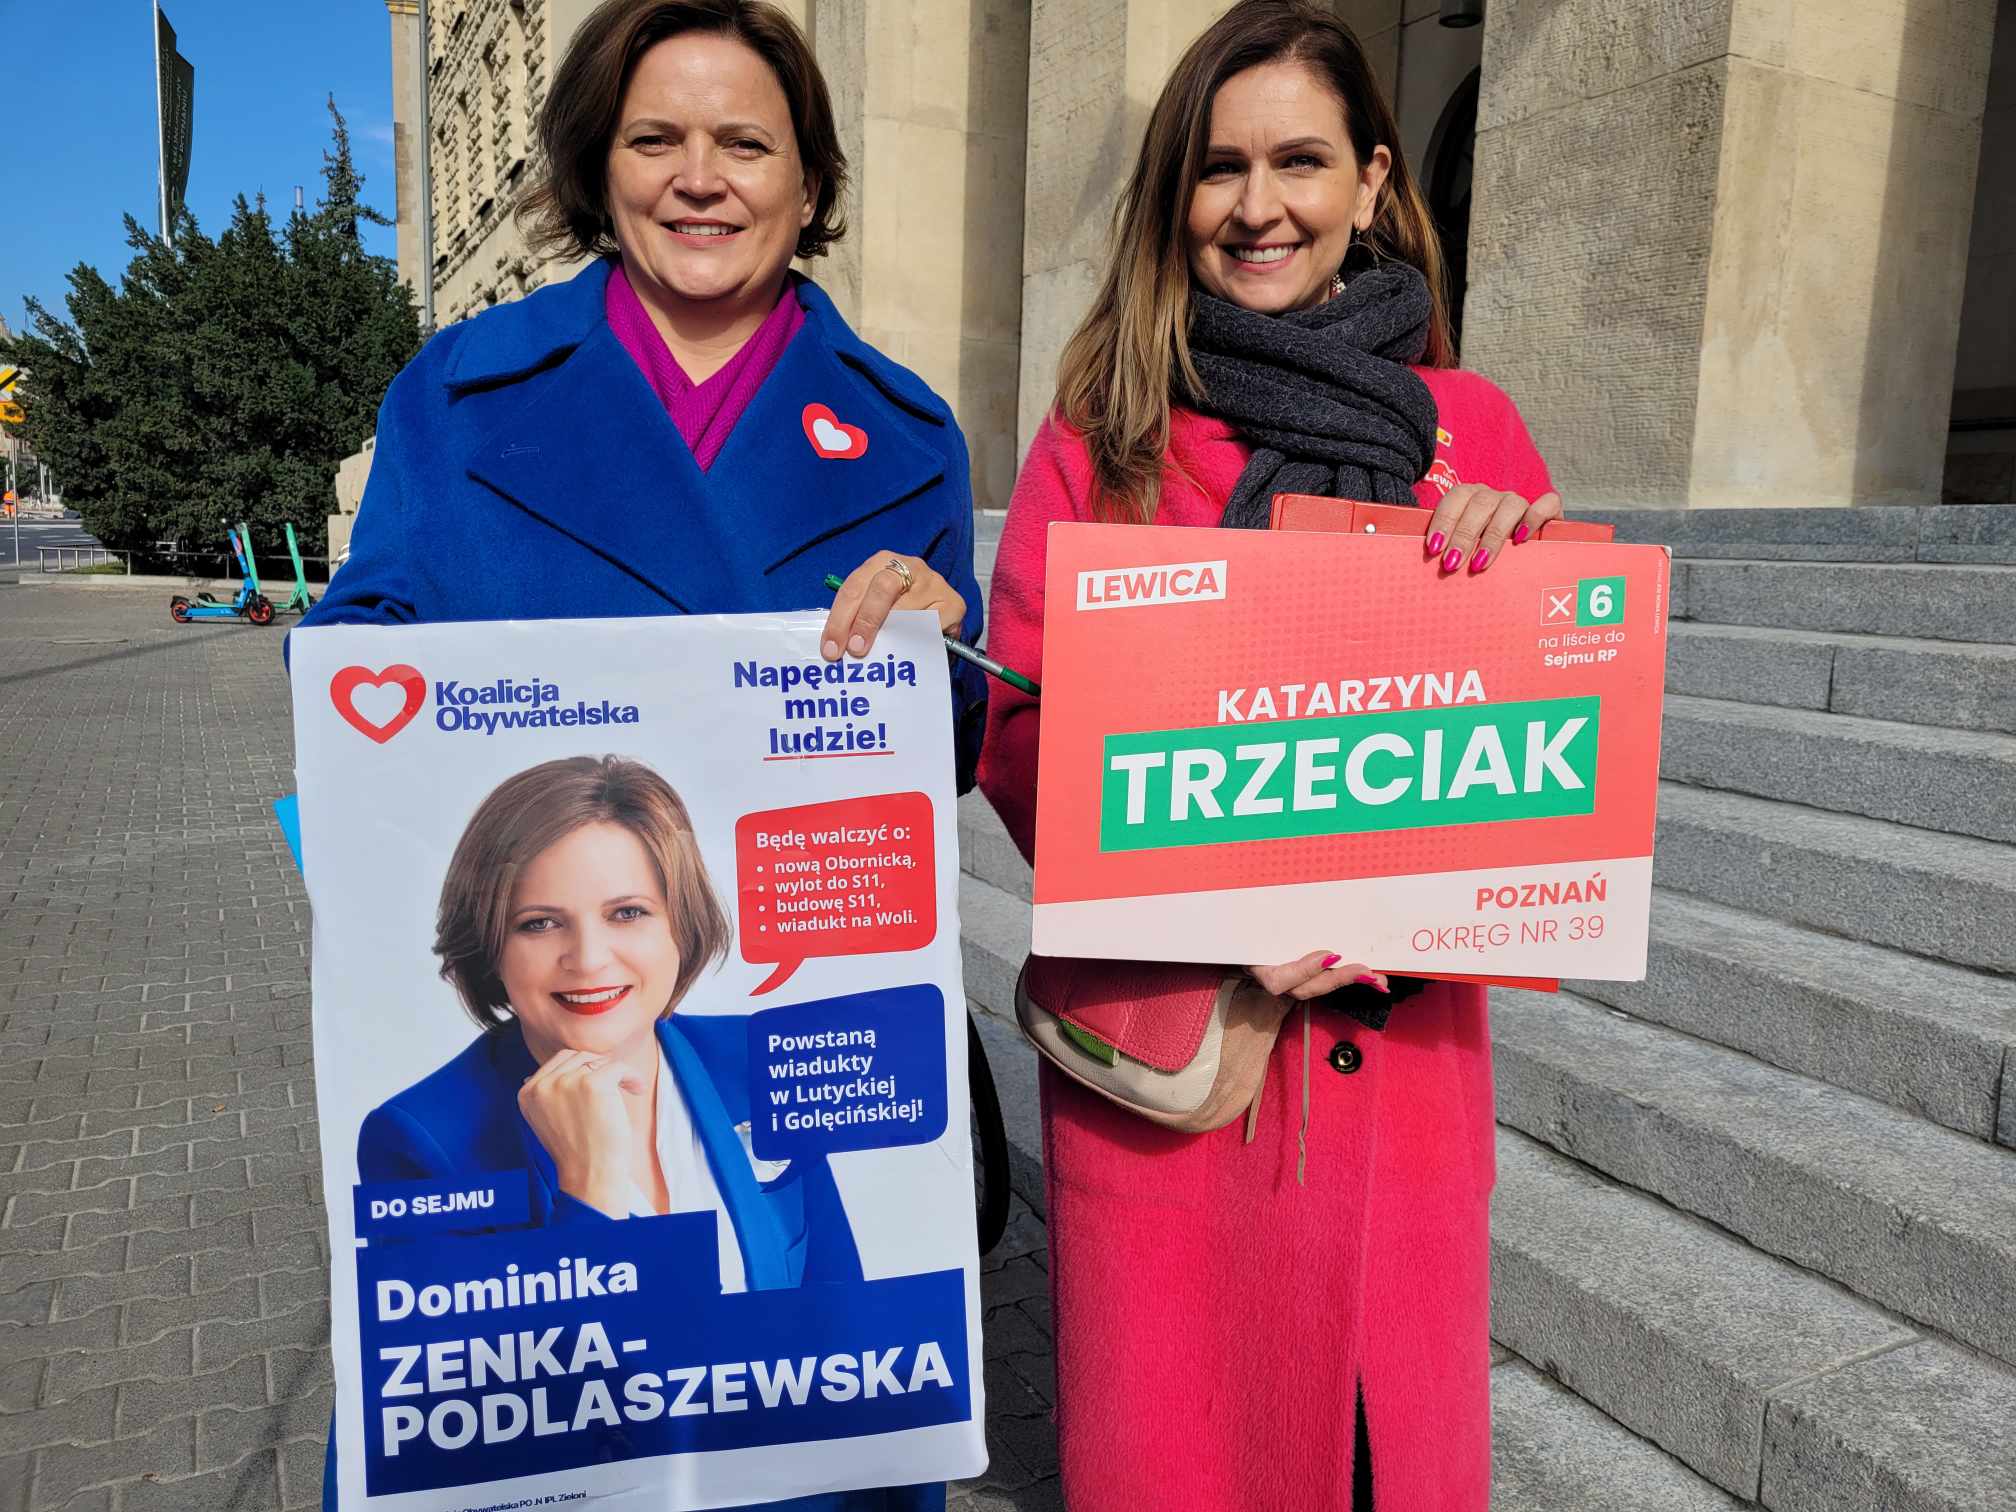  Dominika Zenka-Podlaszewska i Katarzyna Trzeciak - Hubert Jach - Radio Poznań